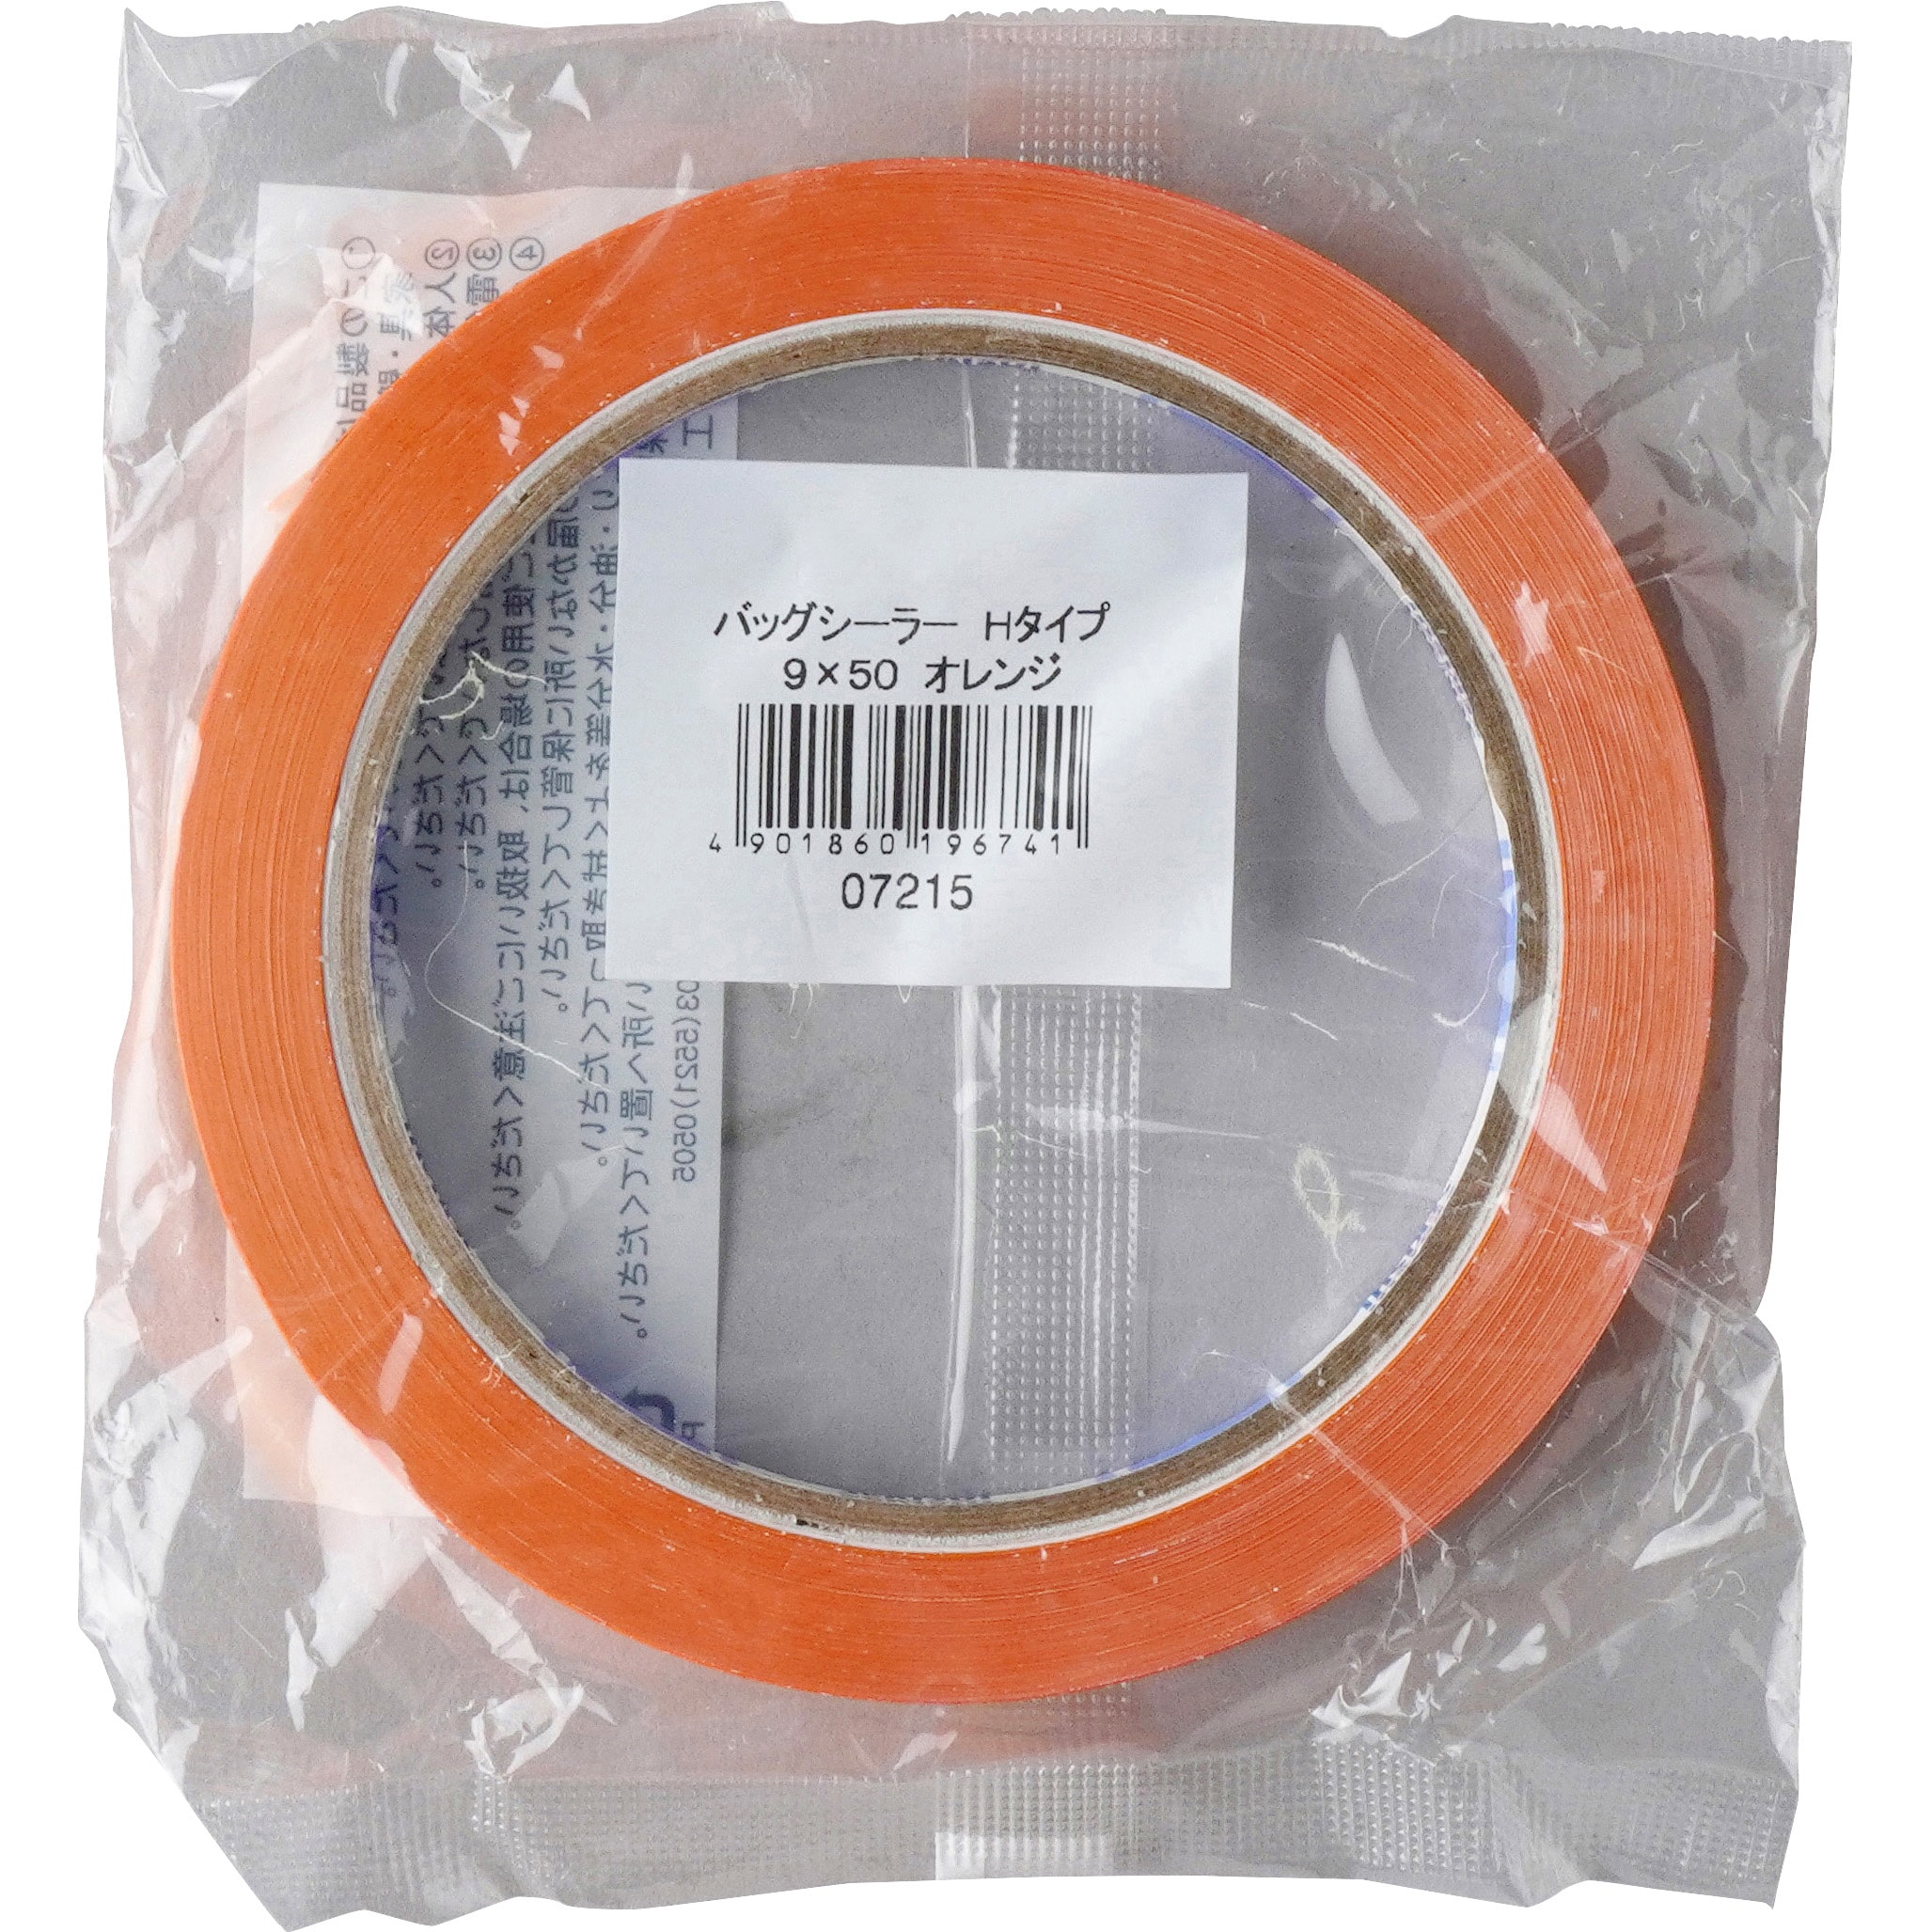 ケース販売積水化学工業 バッグシーラーテープ Hタイプ 9×50 チェック赤 002000022 1ケース(200巻入) - 4